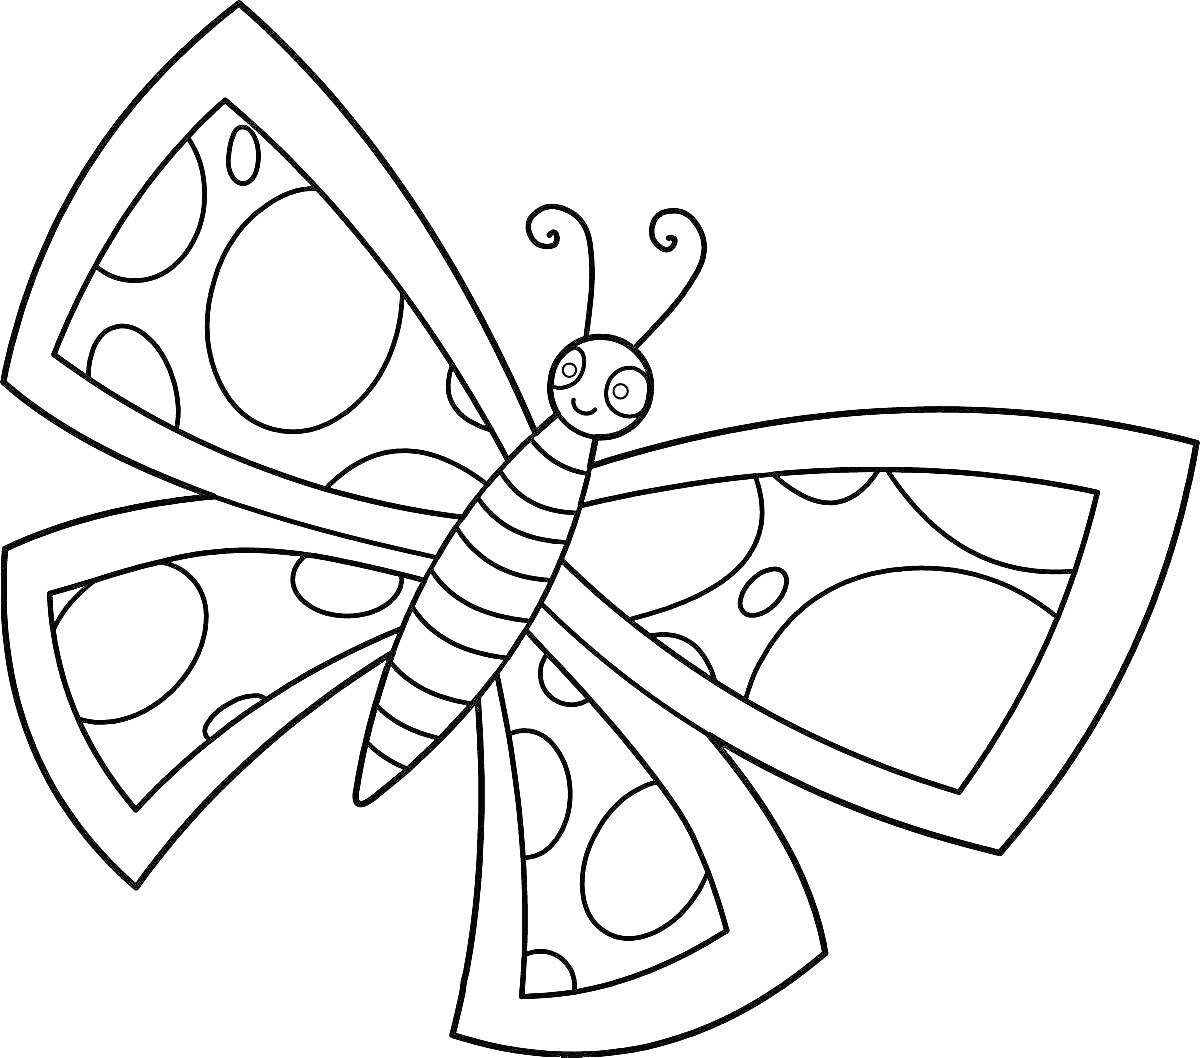 Раскраска Бабочка с круглыми узорами на крыльях и полосатым телом